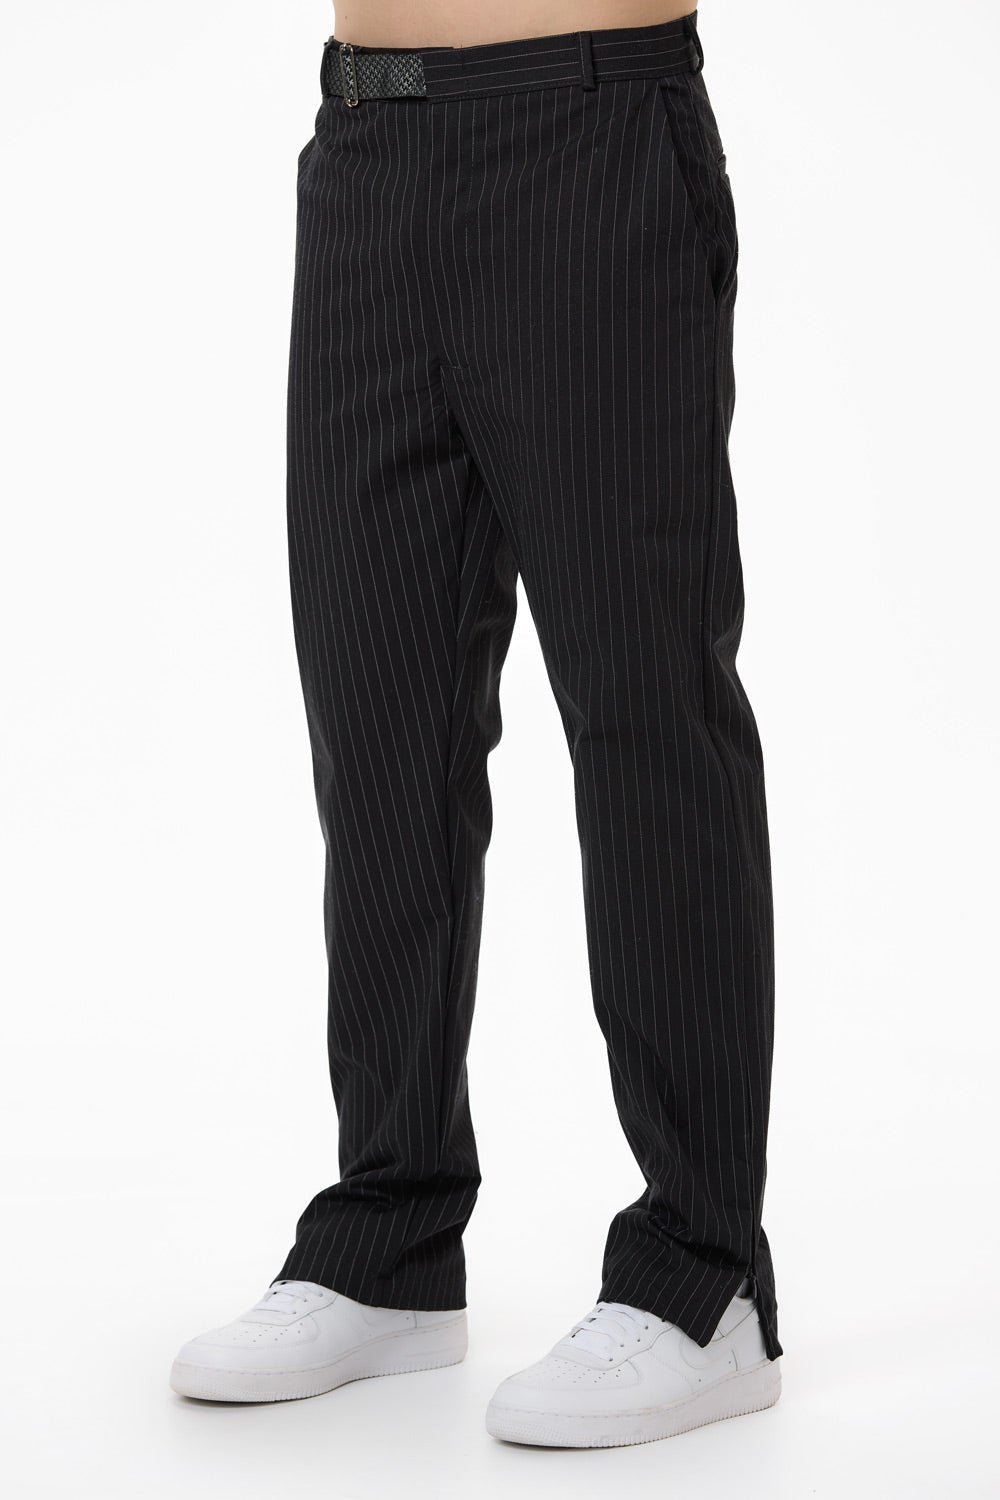 Pantaloni negri pentru bărbați cu decupaj "Monaco" de la Atelier Hamza, compuși din 97% bumbac și 3% elastan, textură moale